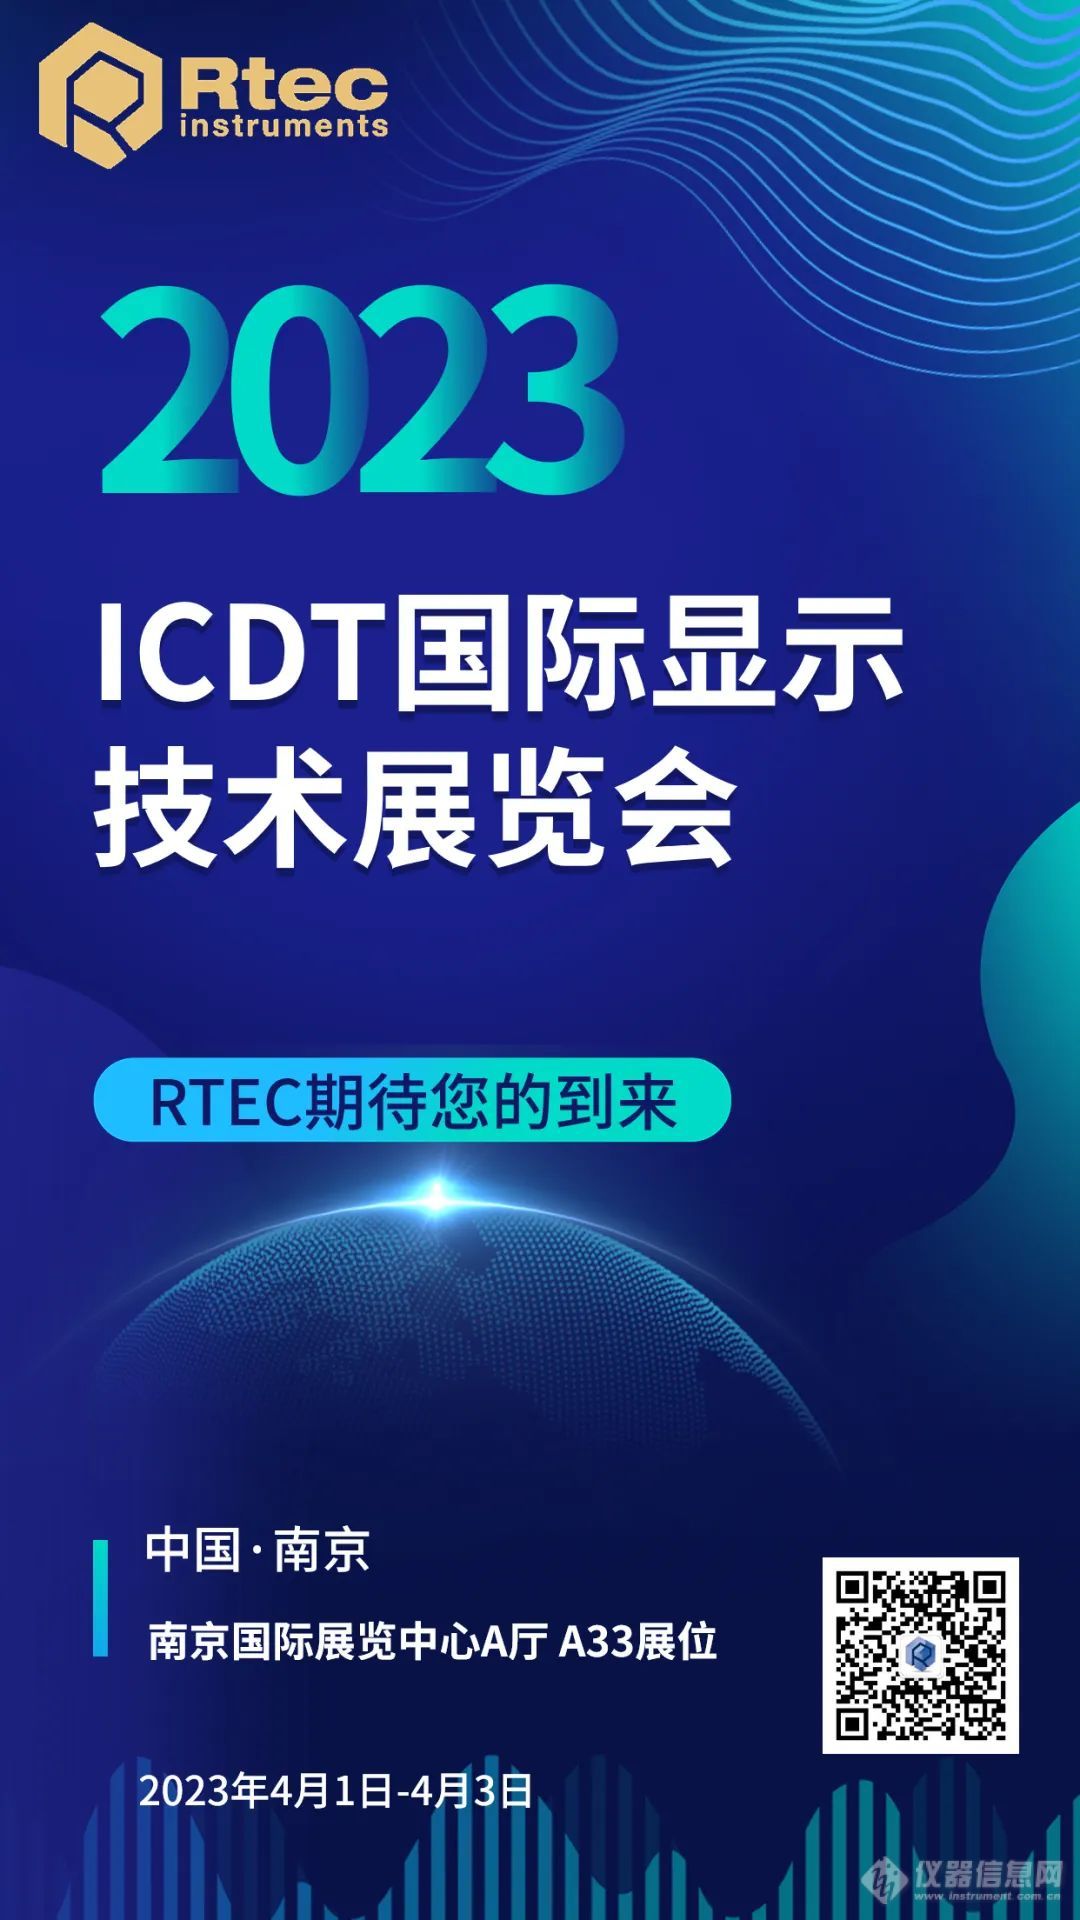 RTEC邀您相聚2023 ICDT显示技术展览会